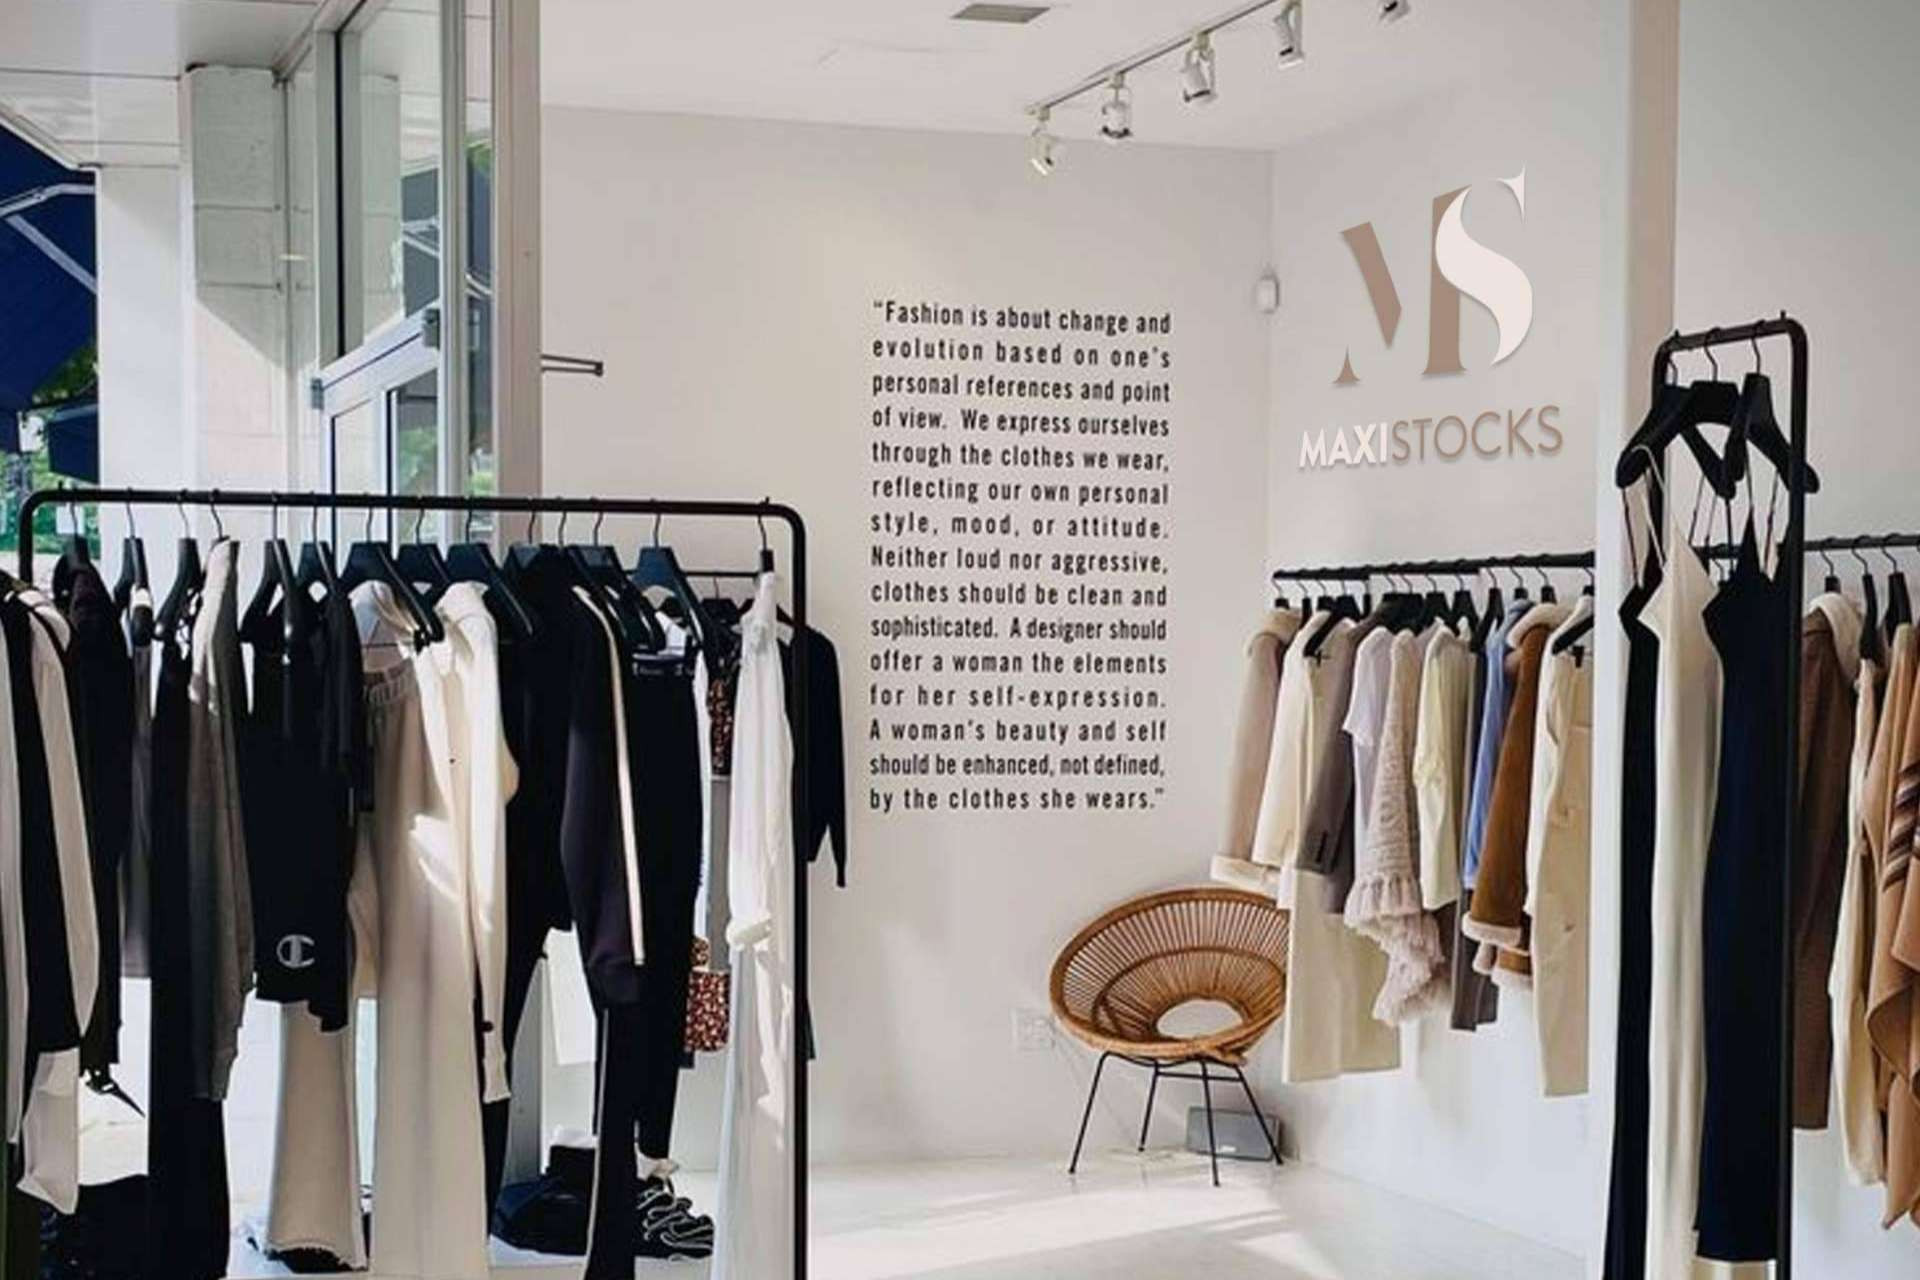  MaxiStocks, el nuevo proyecto de 1 Best Outlet que permite vender ropa a un precio único 